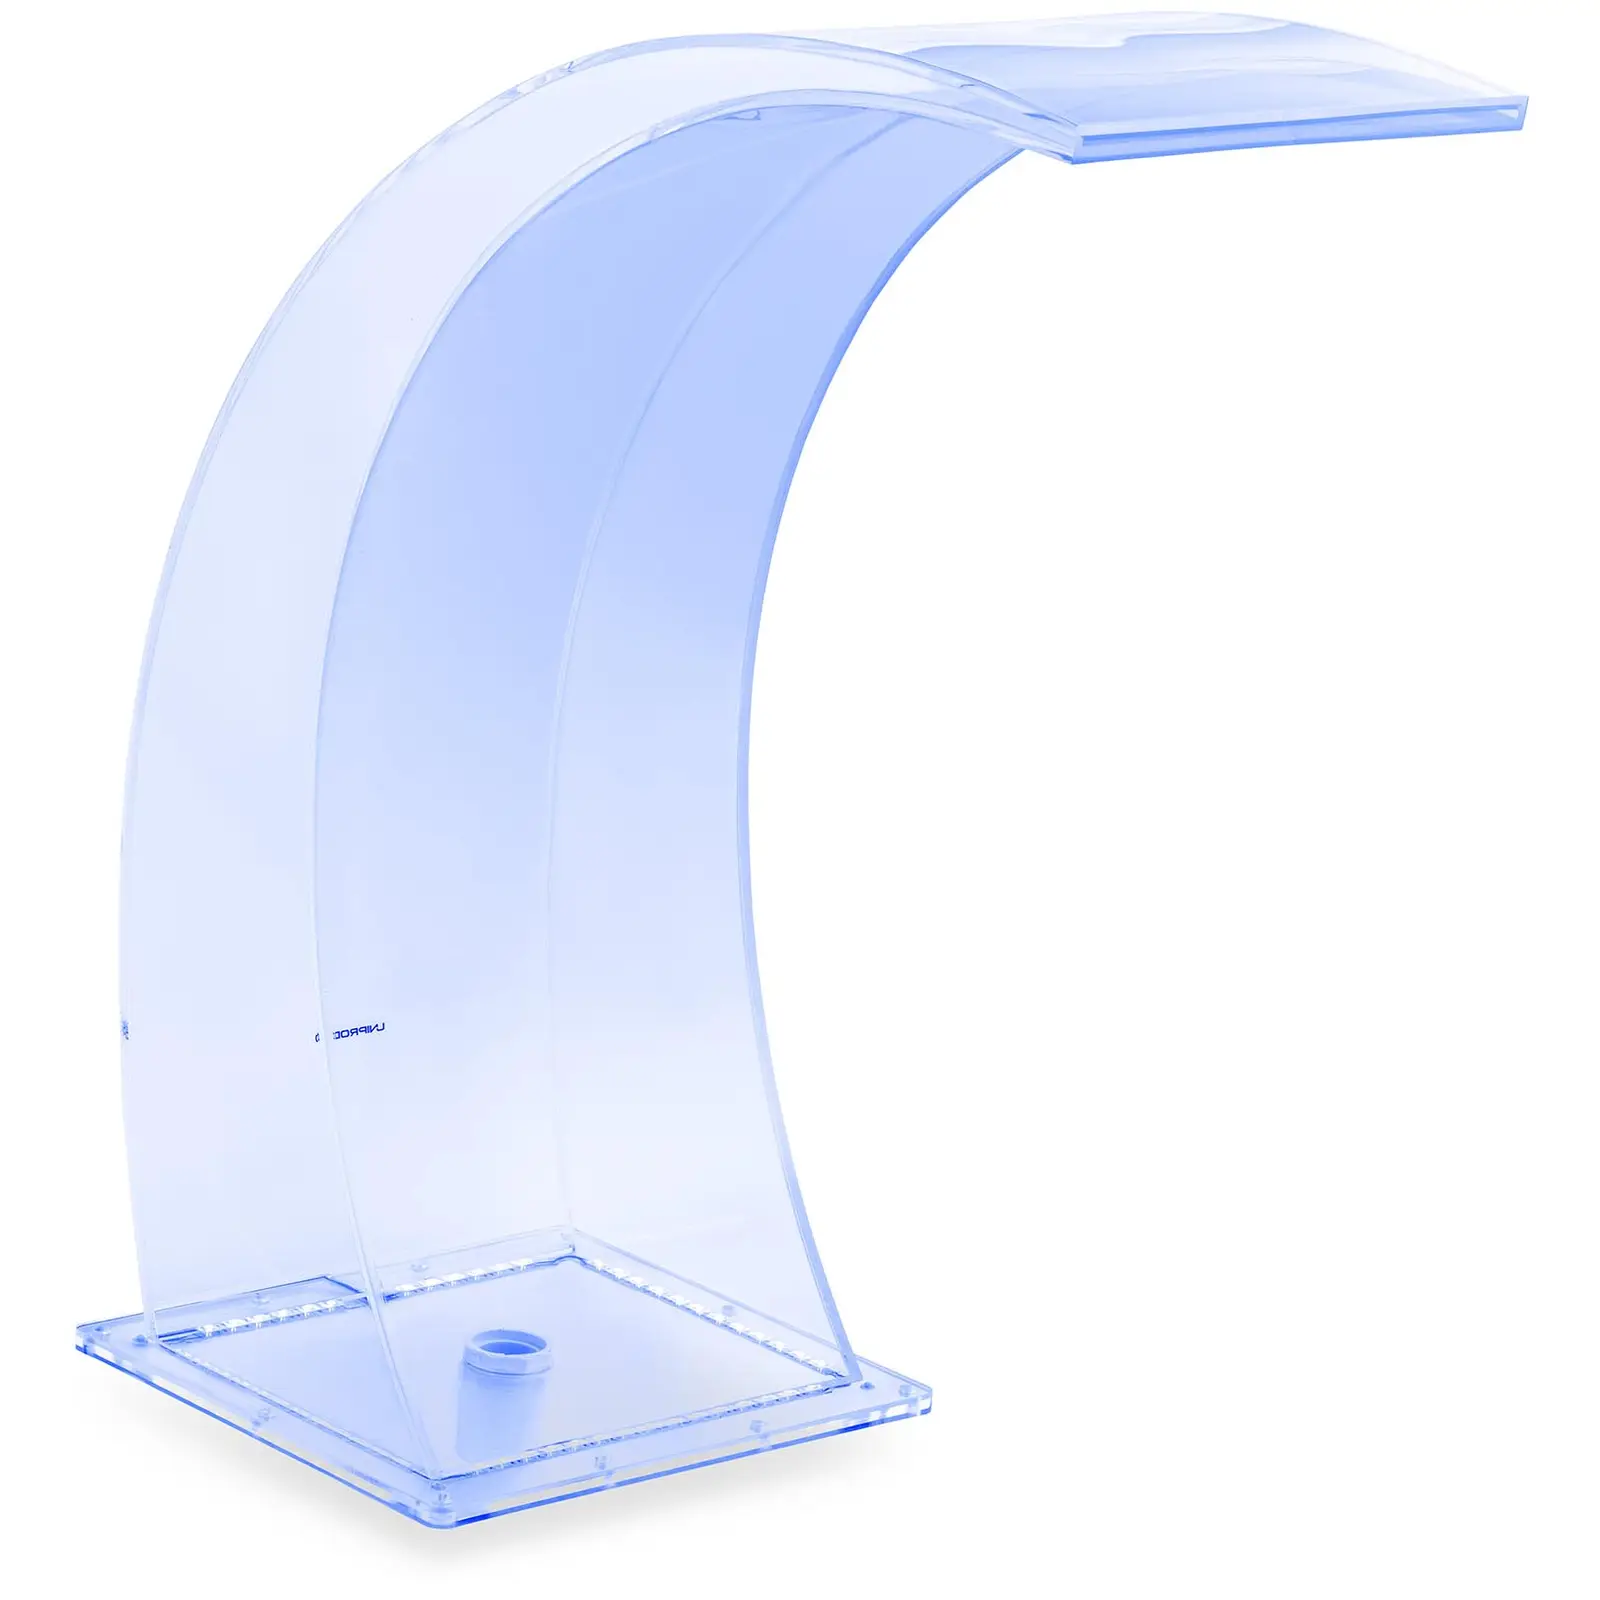 Chrlič vody - 35 cm - LED osvětlení - modrá/bílá barva - výtok 303 mm